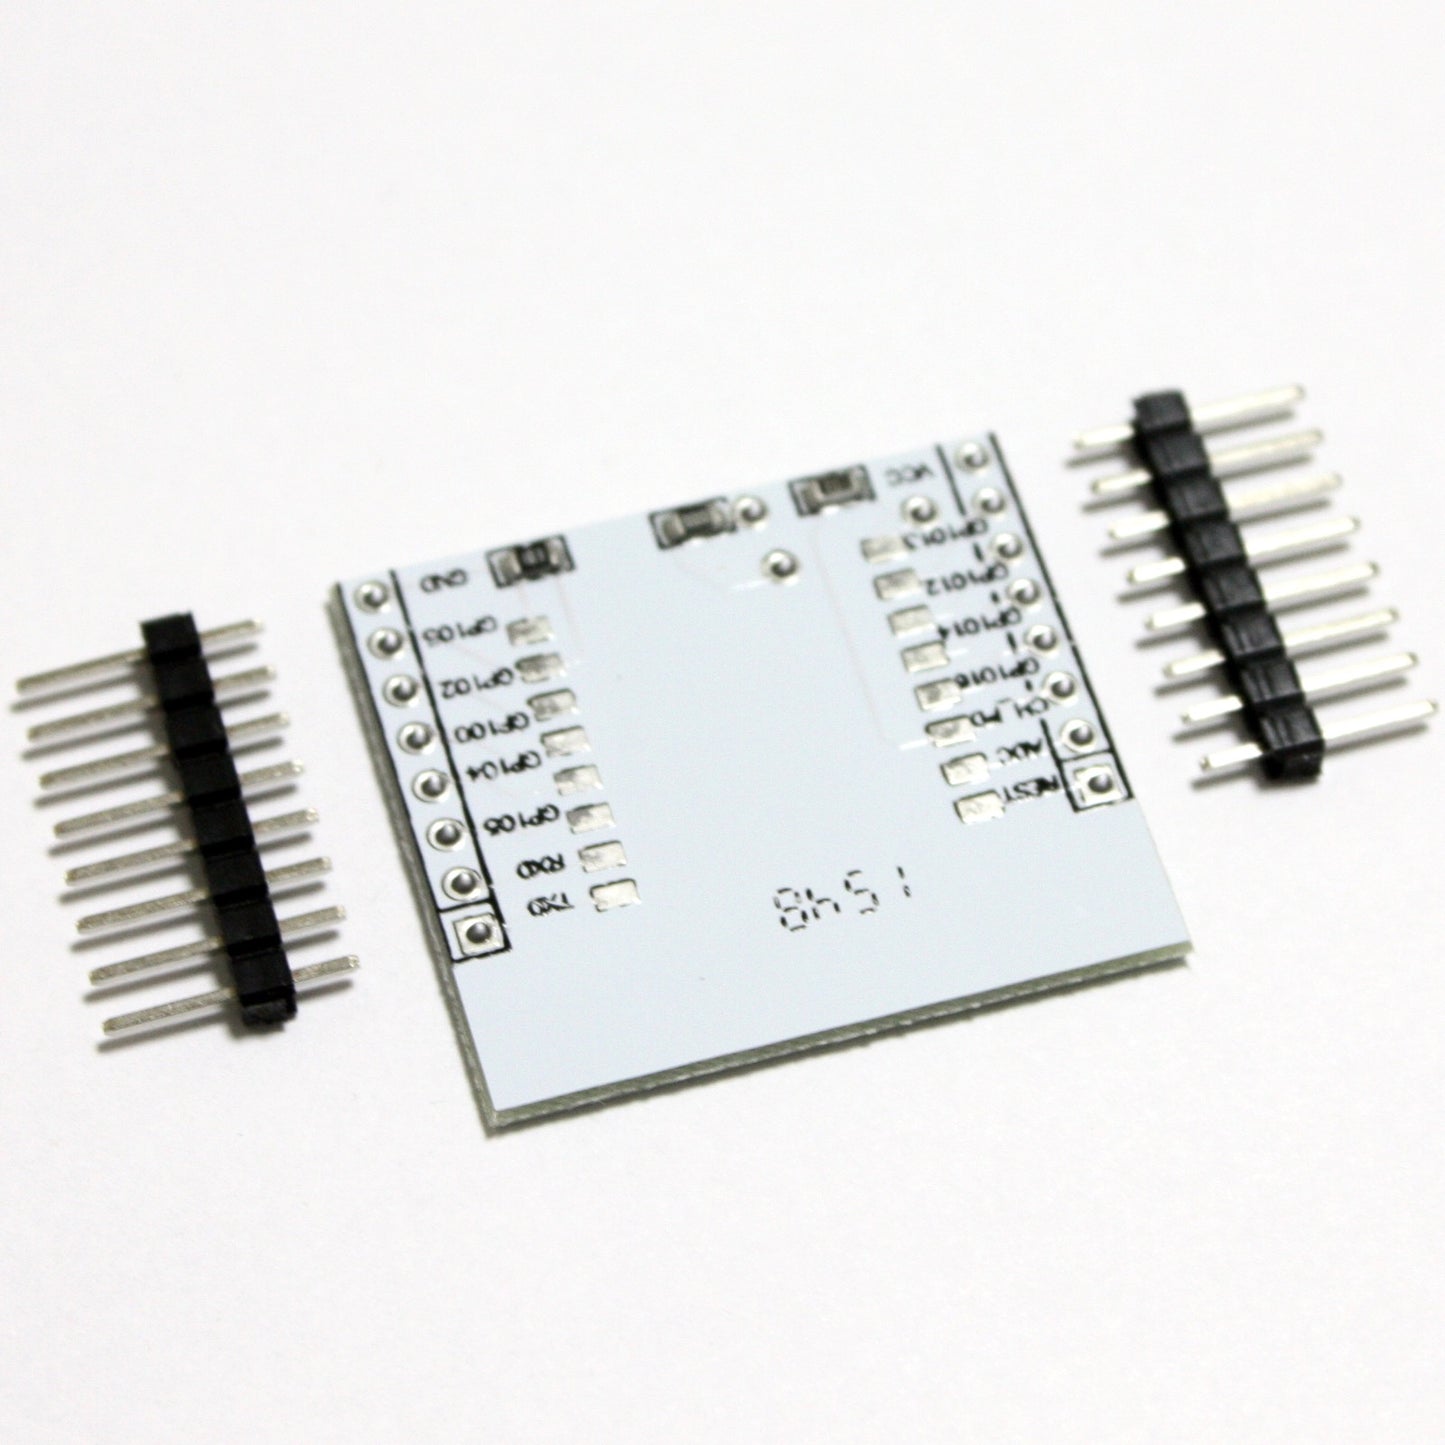 Adapter PCB, Breakout Board for ESP8266 ESP-07, ESP-12